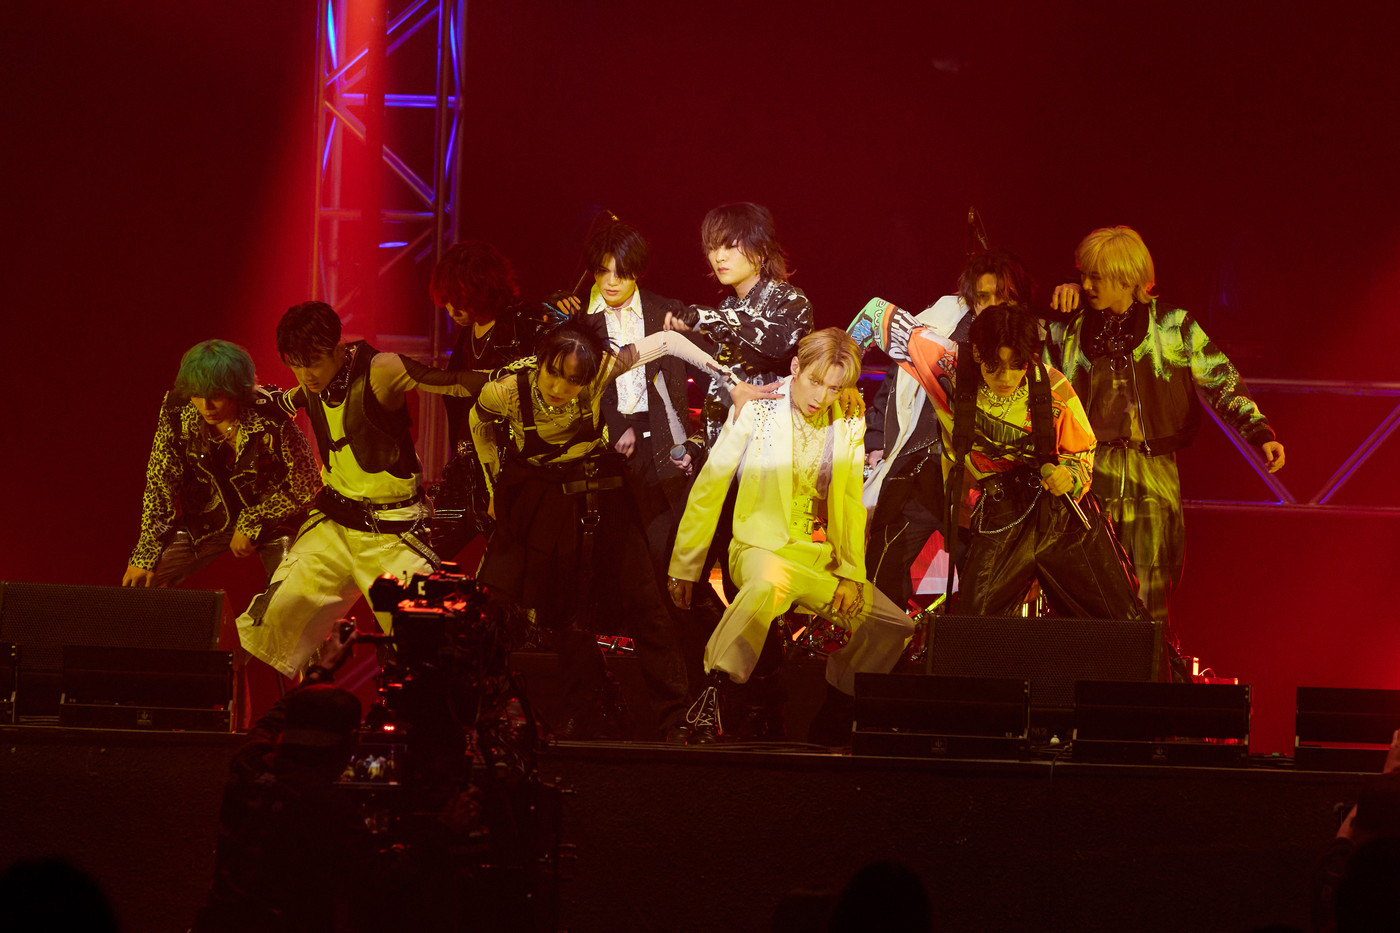 【ライブレポート】XY、YOSHIKI作詞作曲の新曲「Spiky Fashion」を横浜アリーナでサプライズ初披露